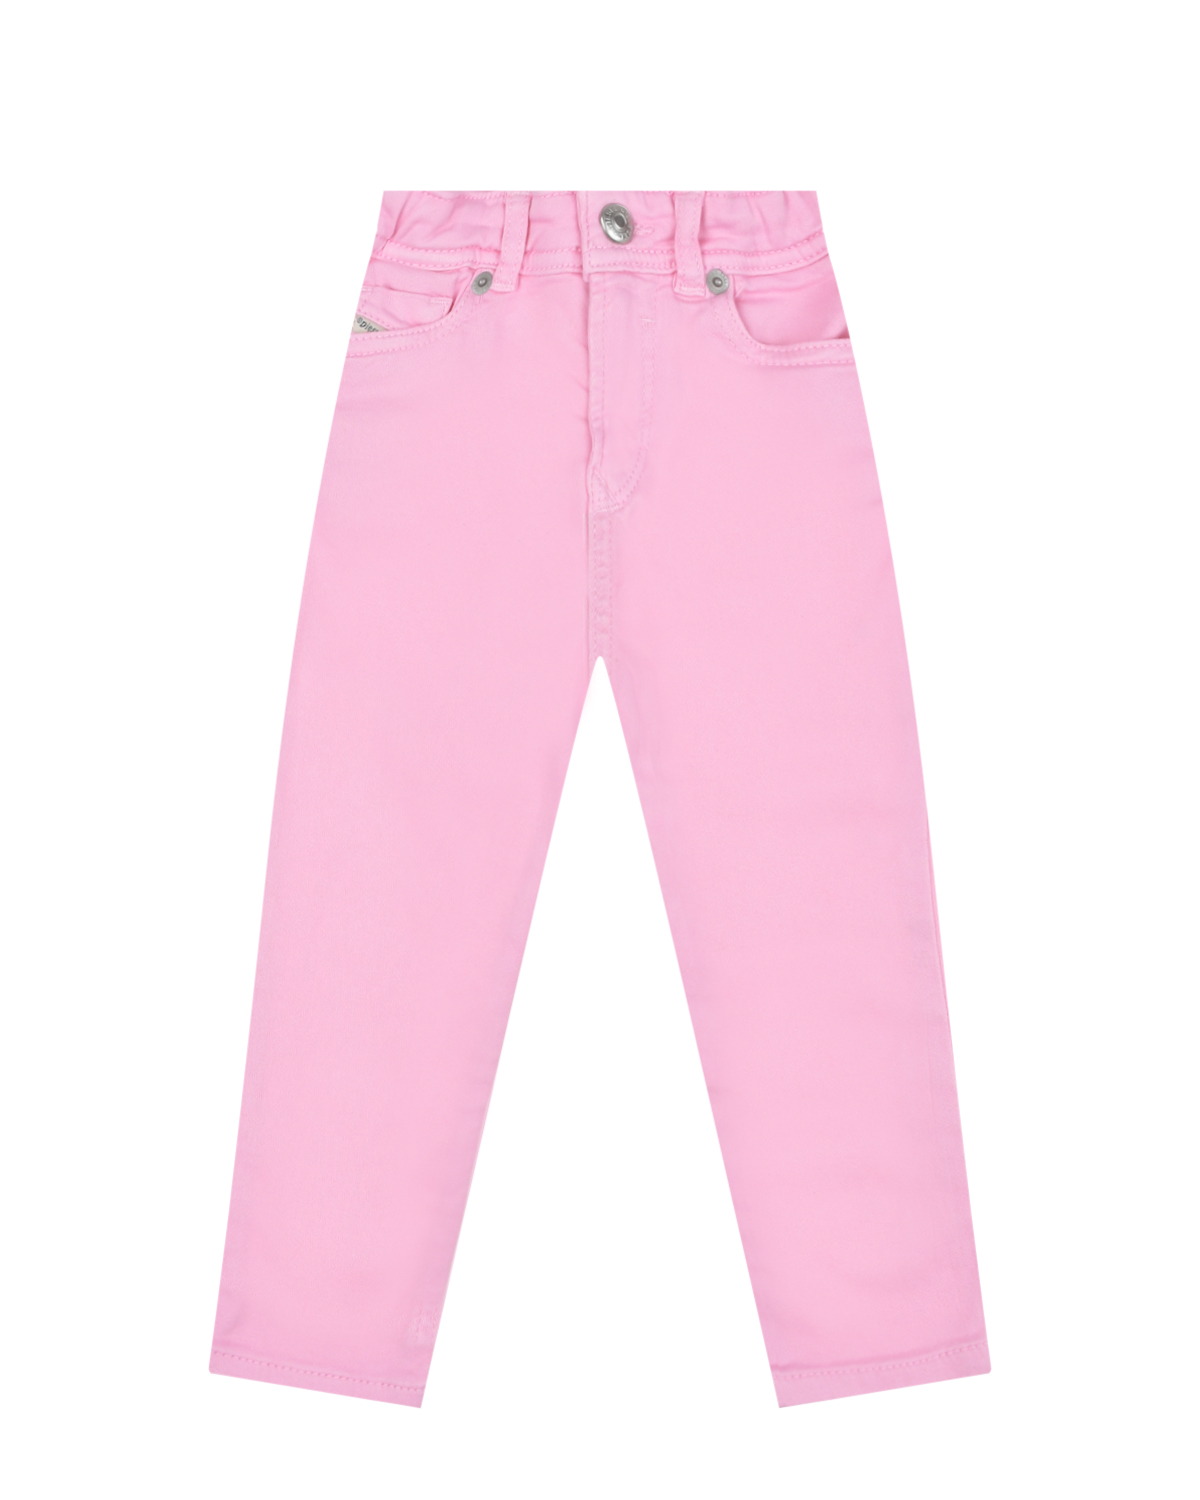 Розовые джинсы с поясом на резинке Diesel, размер 80, цвет розовый - фото 1